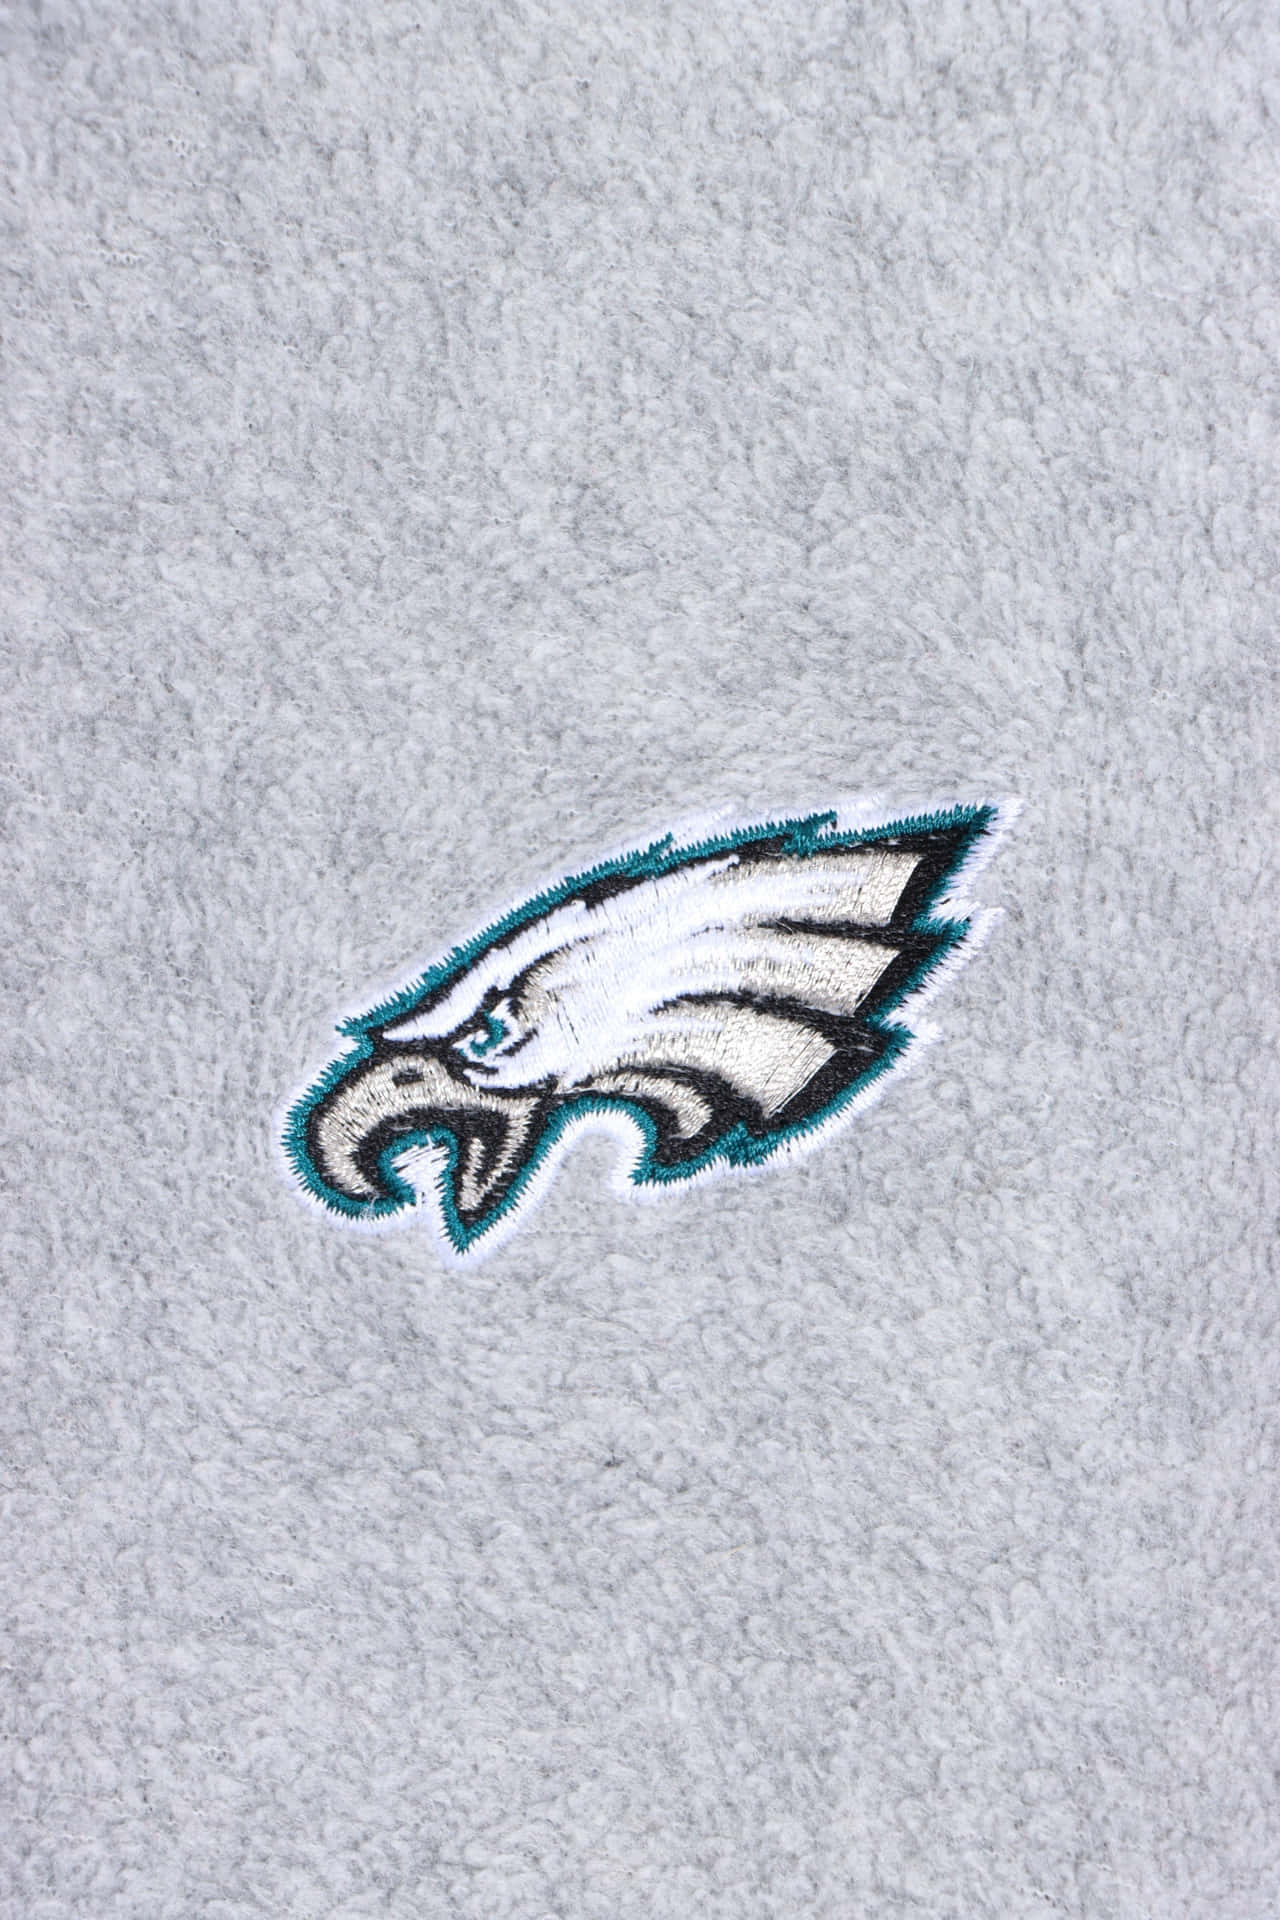 Philadelphia Eagles Fleece Blanket Wallpaper